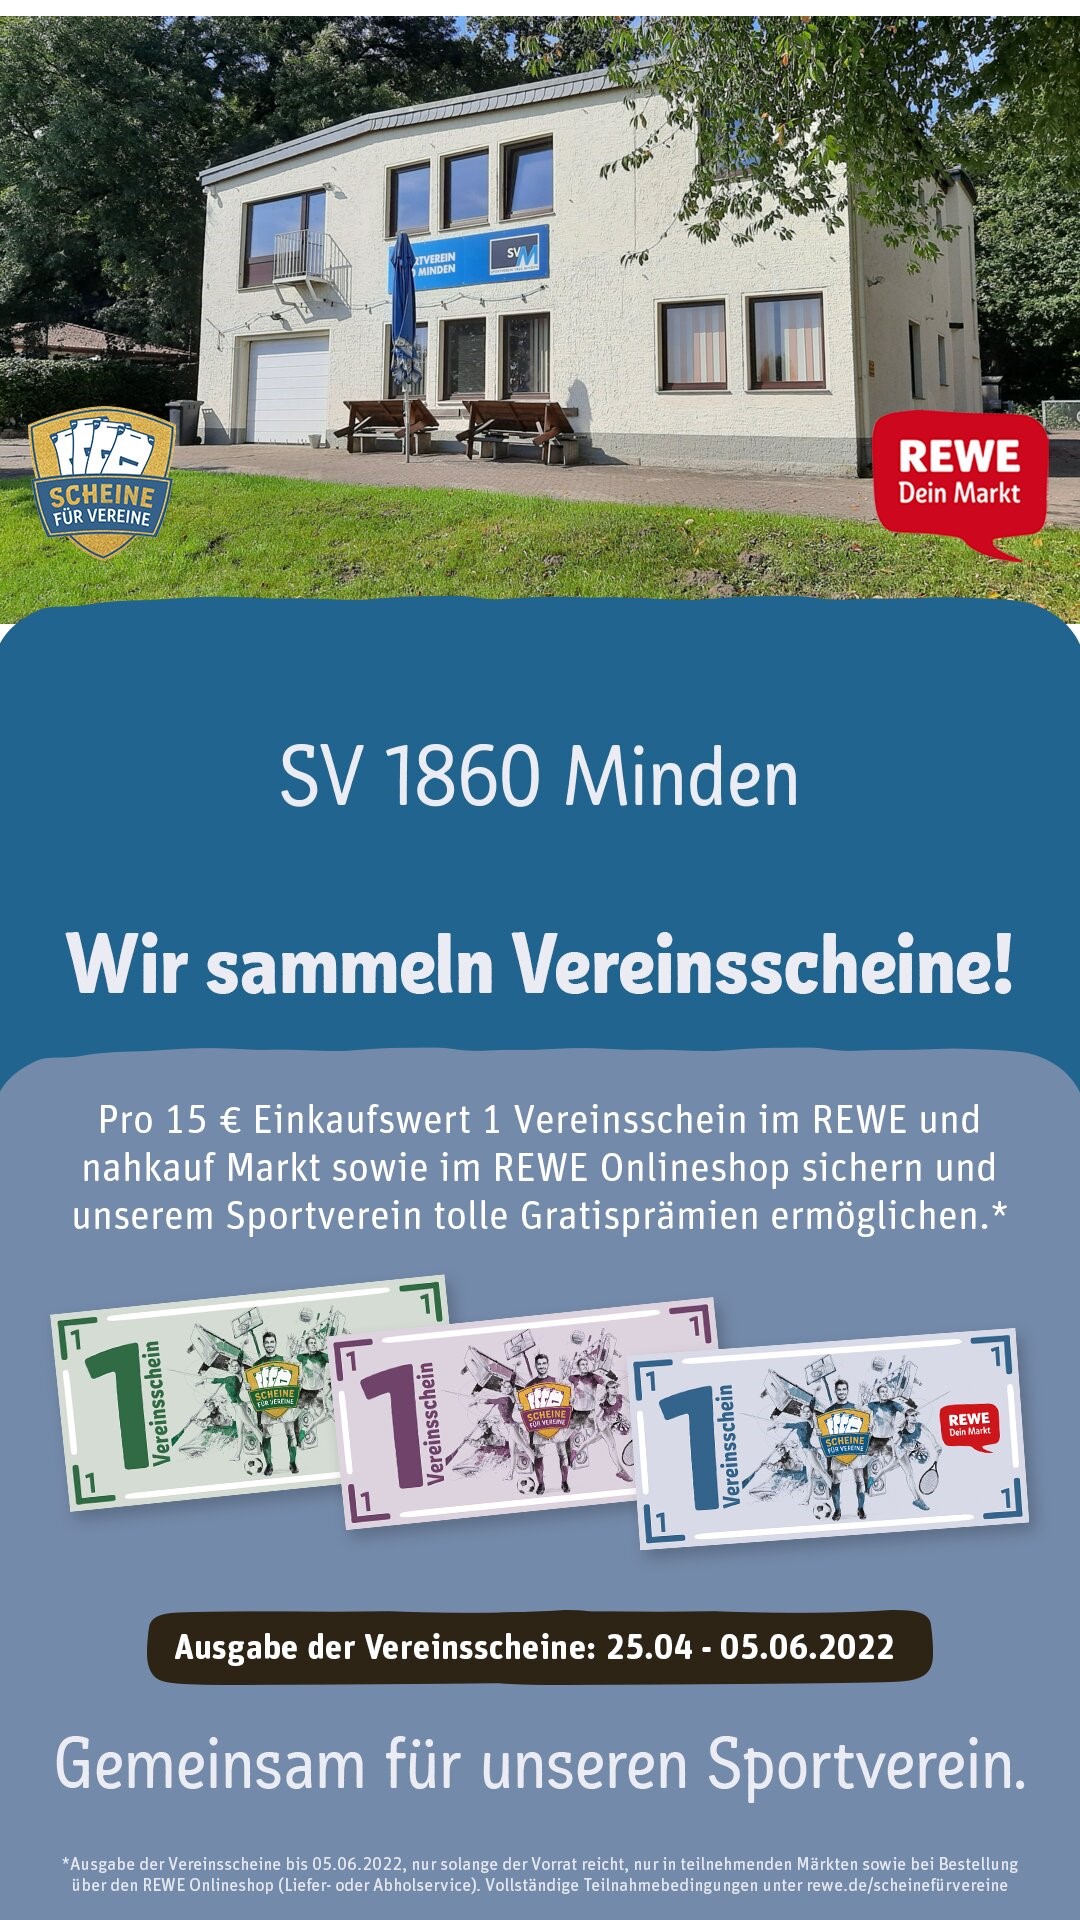 REWE Scheine fuer Vereine Poster Story